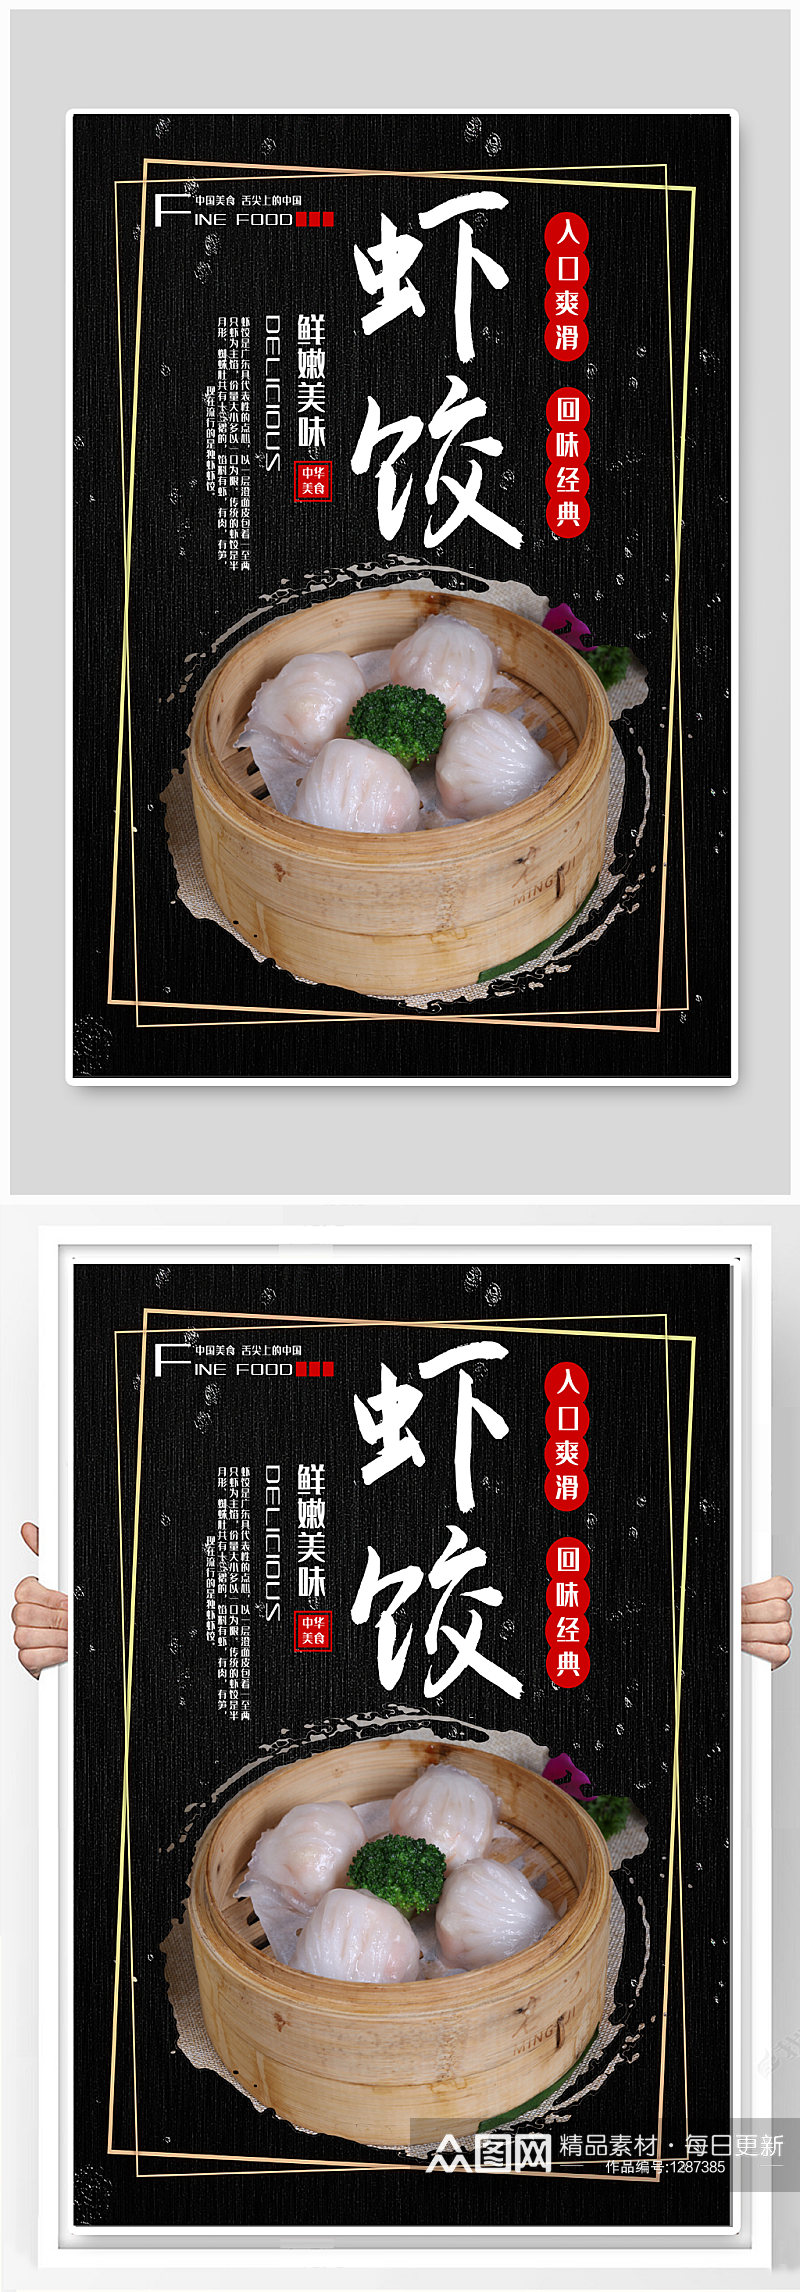 虾饺特色美食宣传海报素材